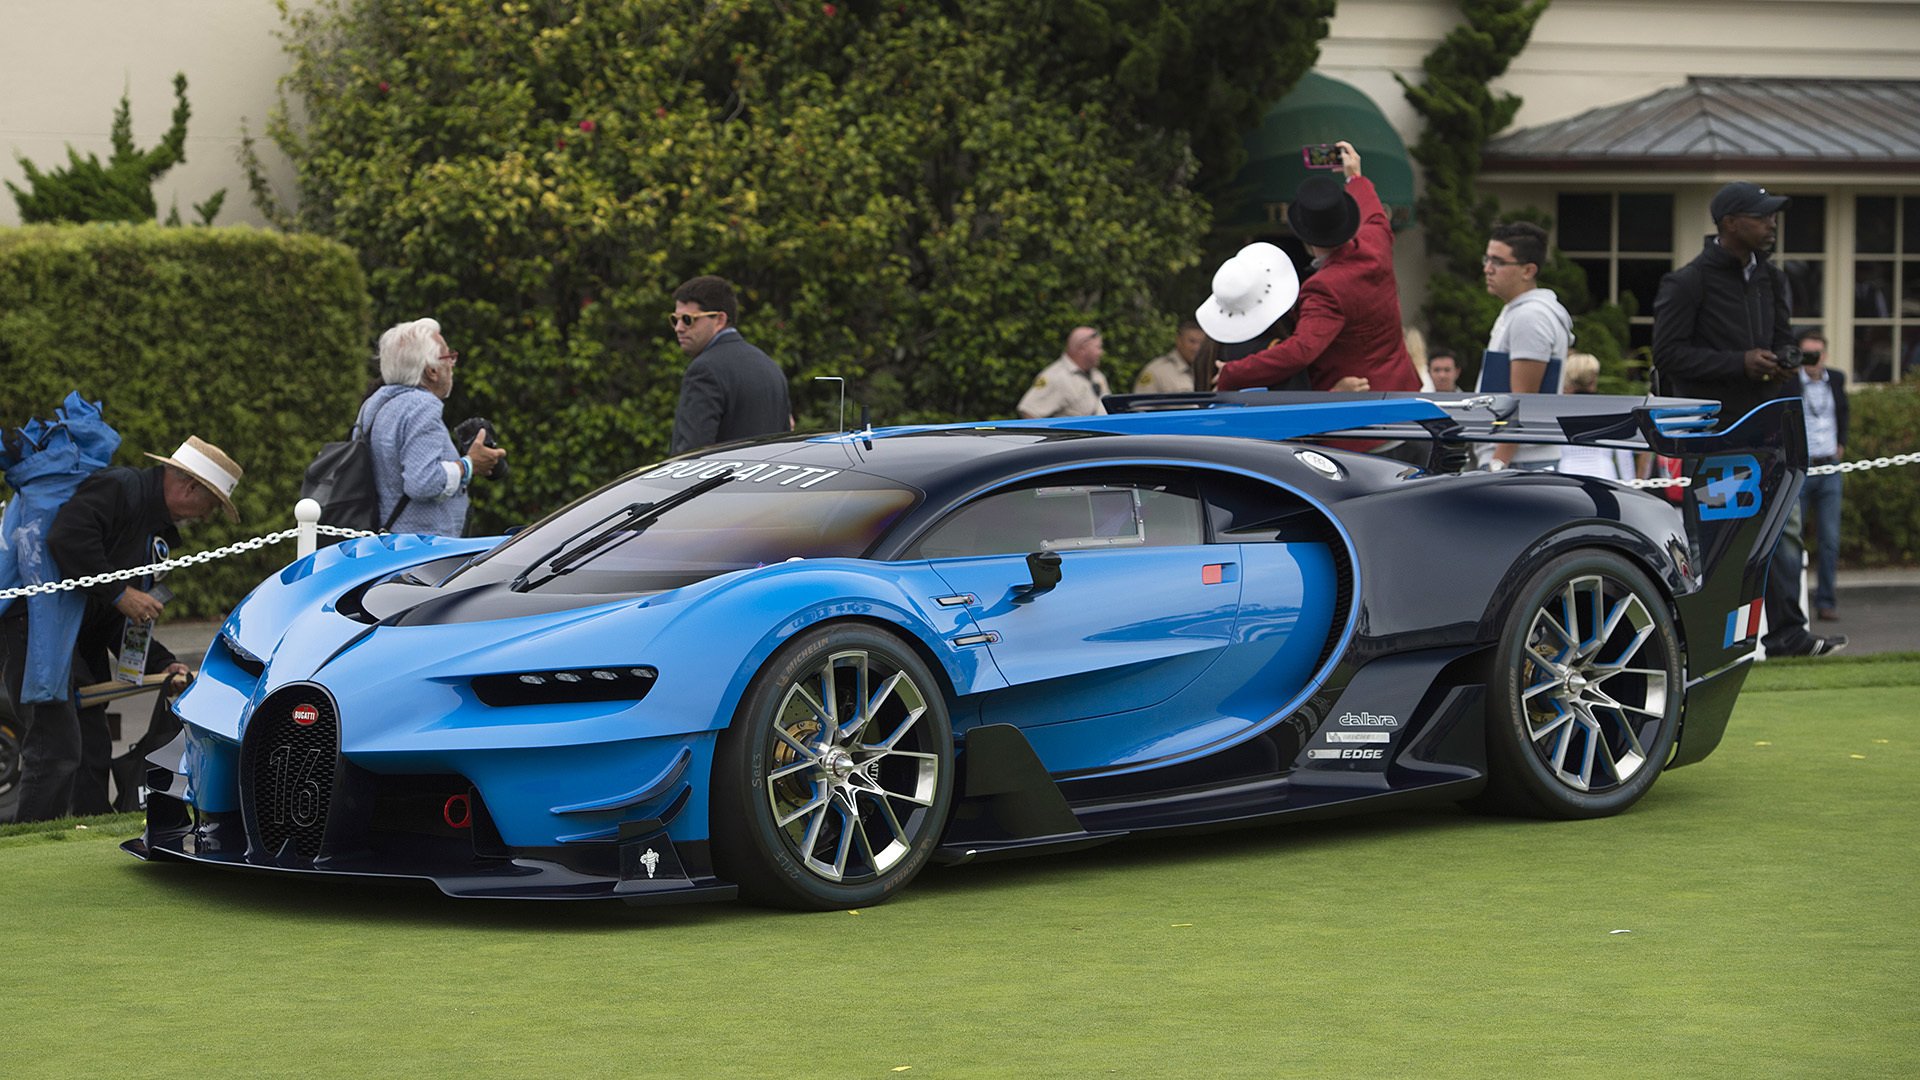 A New Horizon: The 2015 Bugatti Vision Gran Turismo Concept